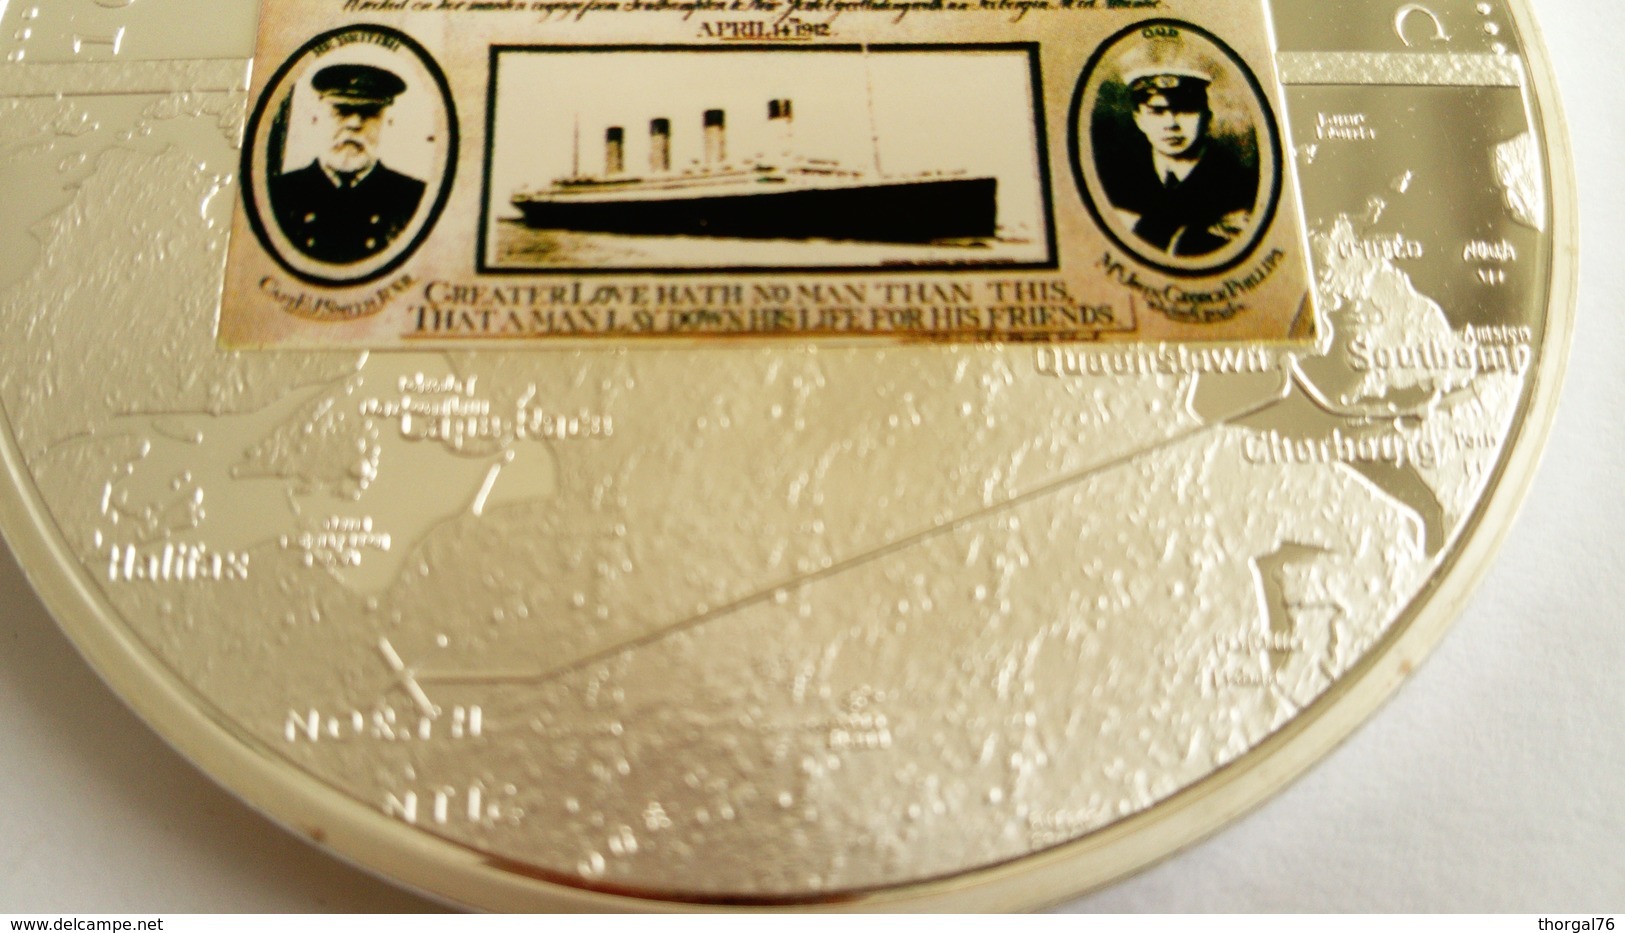 TITANIC 1912- 2012 MEDAILLE COMMEMORATIVE DU NAUFRAGE DU PAQUEBOT TITANIC - Décoration Maritime